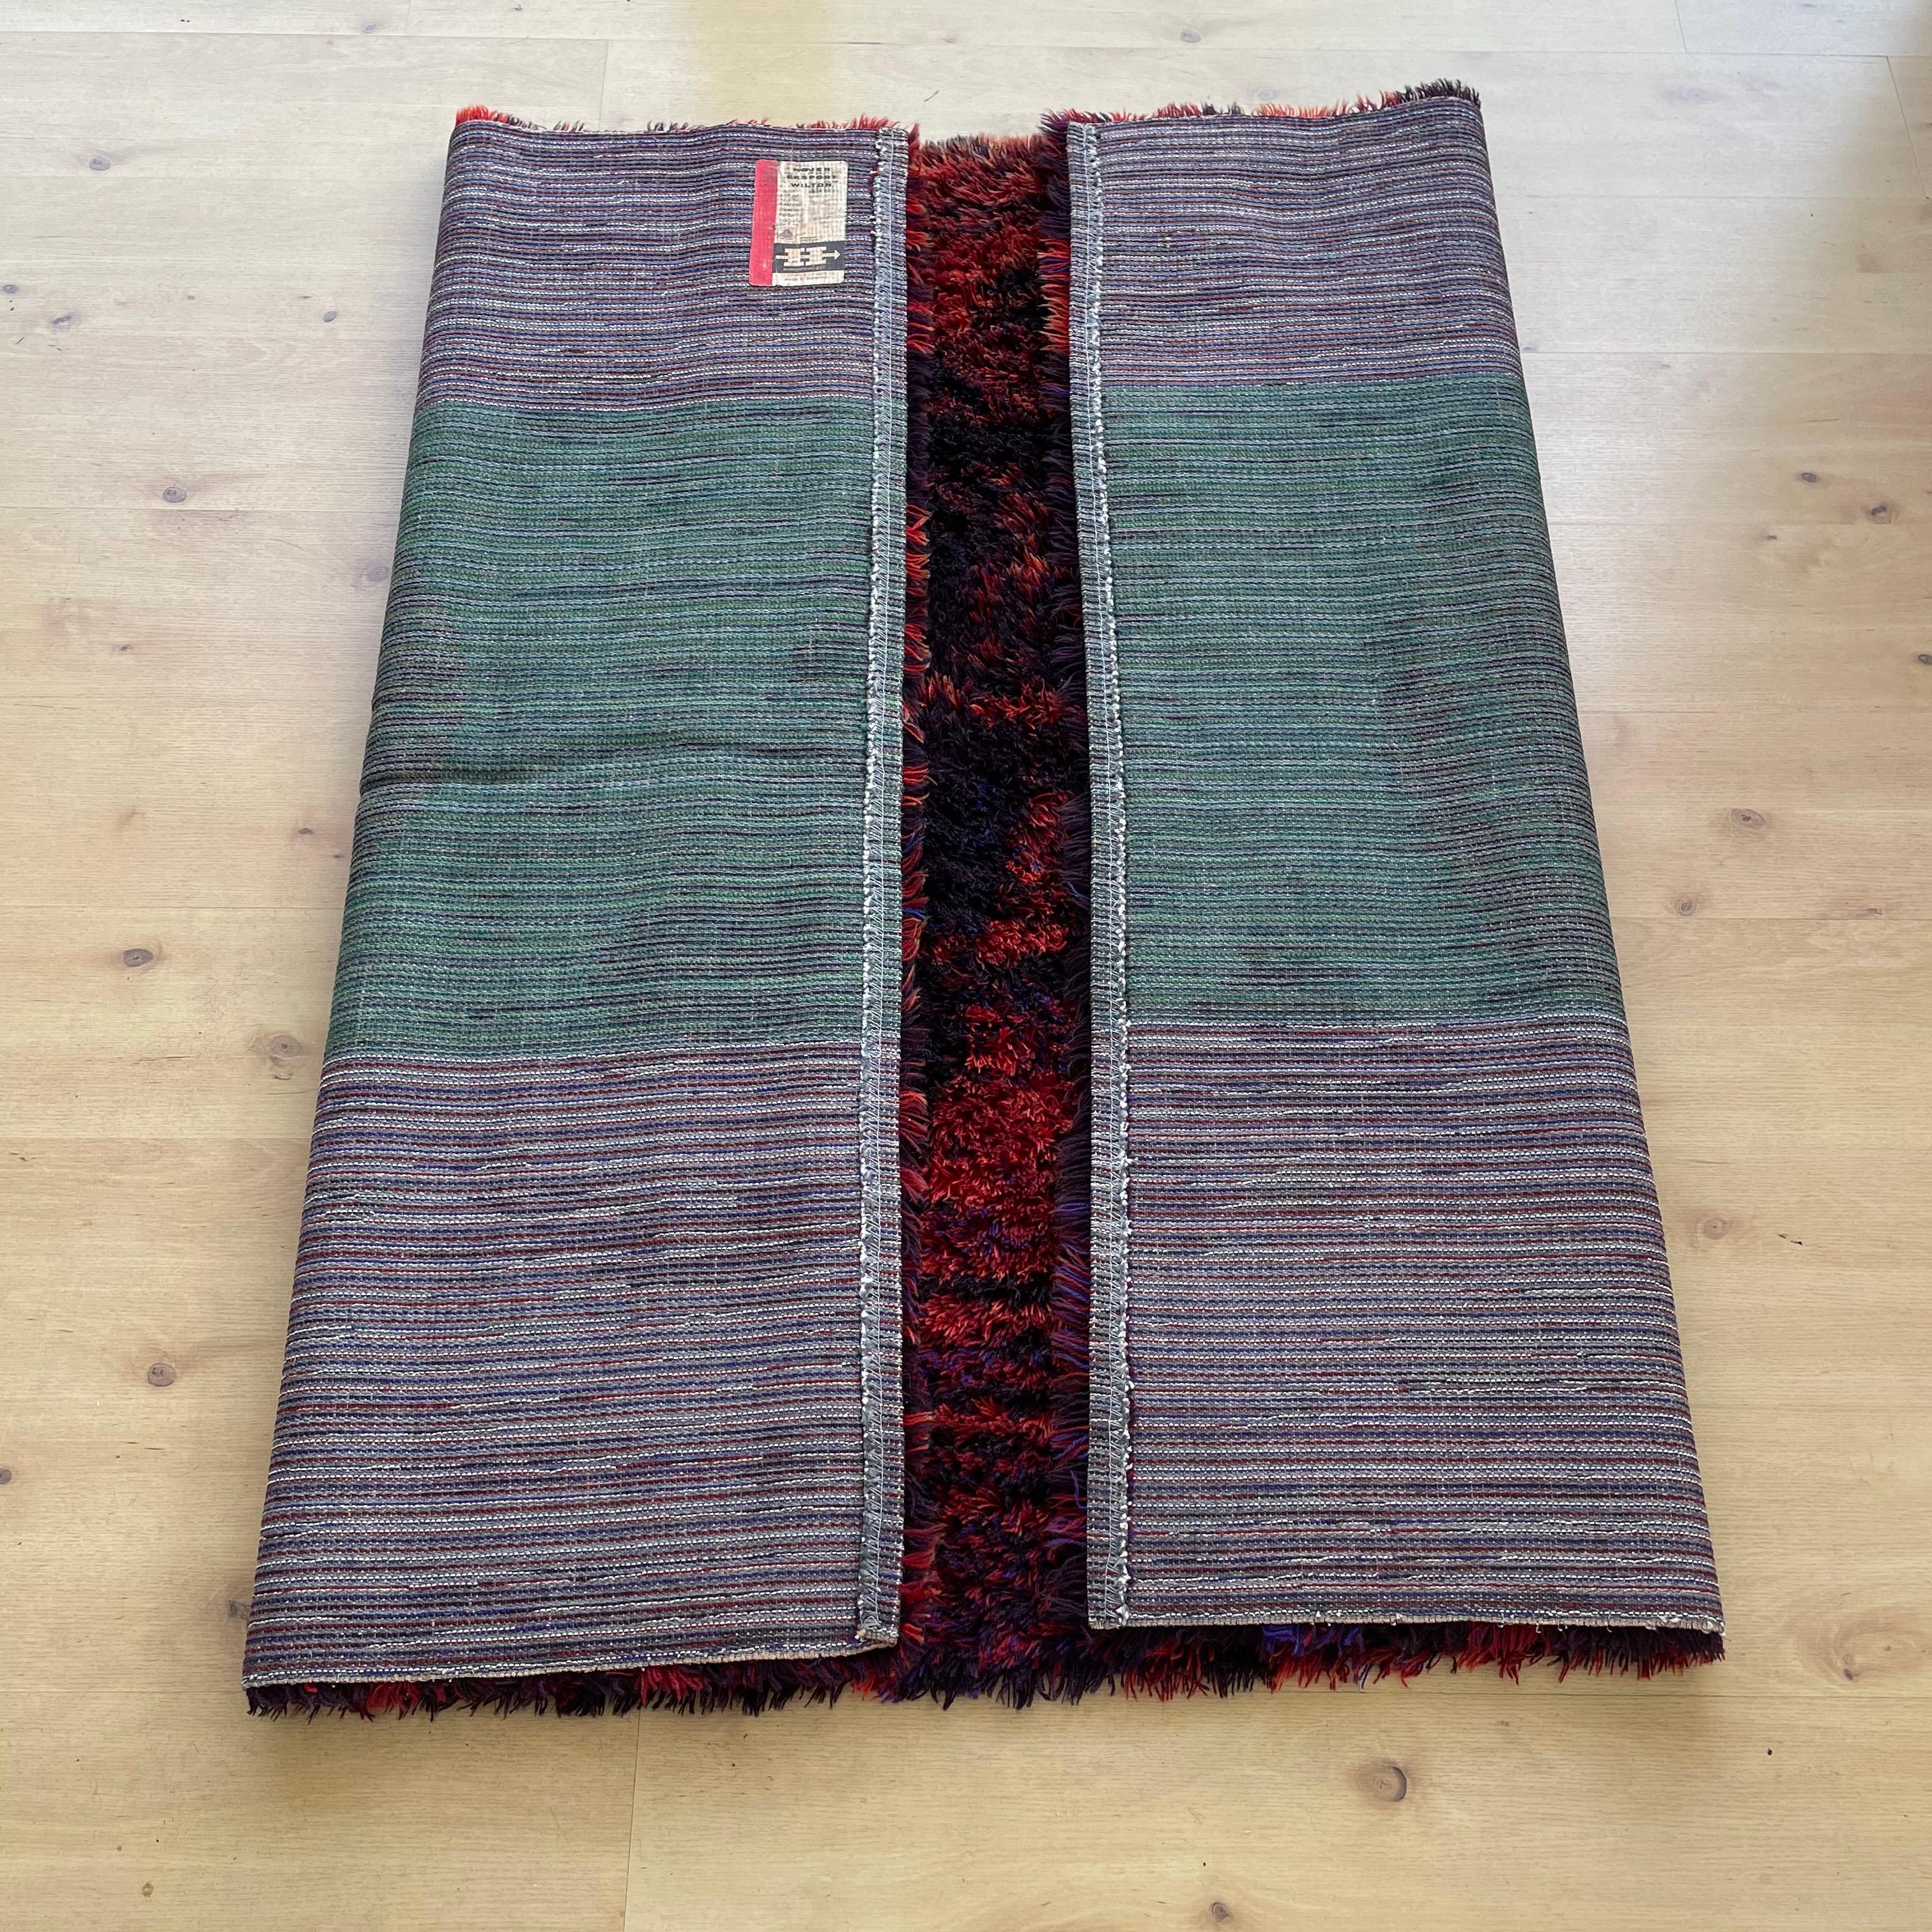 Danish Modern Wool Rya Rug Tapestry by Hojer Eksport Wilton, 1960s, Denmark no 2 For Sale 14